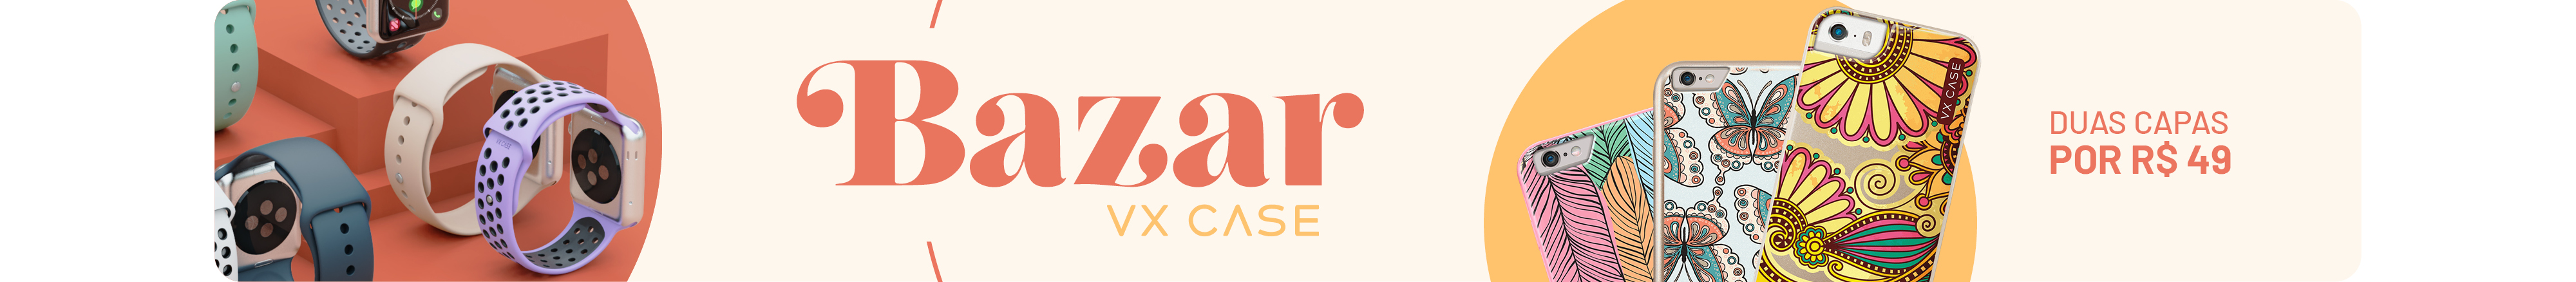 Bazar VX Case - Variedade de capinhas. Duas capas por apenas R$49 Escolha a capa estampada que mais combina com o seu estilo. Aproveite também o Frete Grátis em pedidos a partir de R$ 179